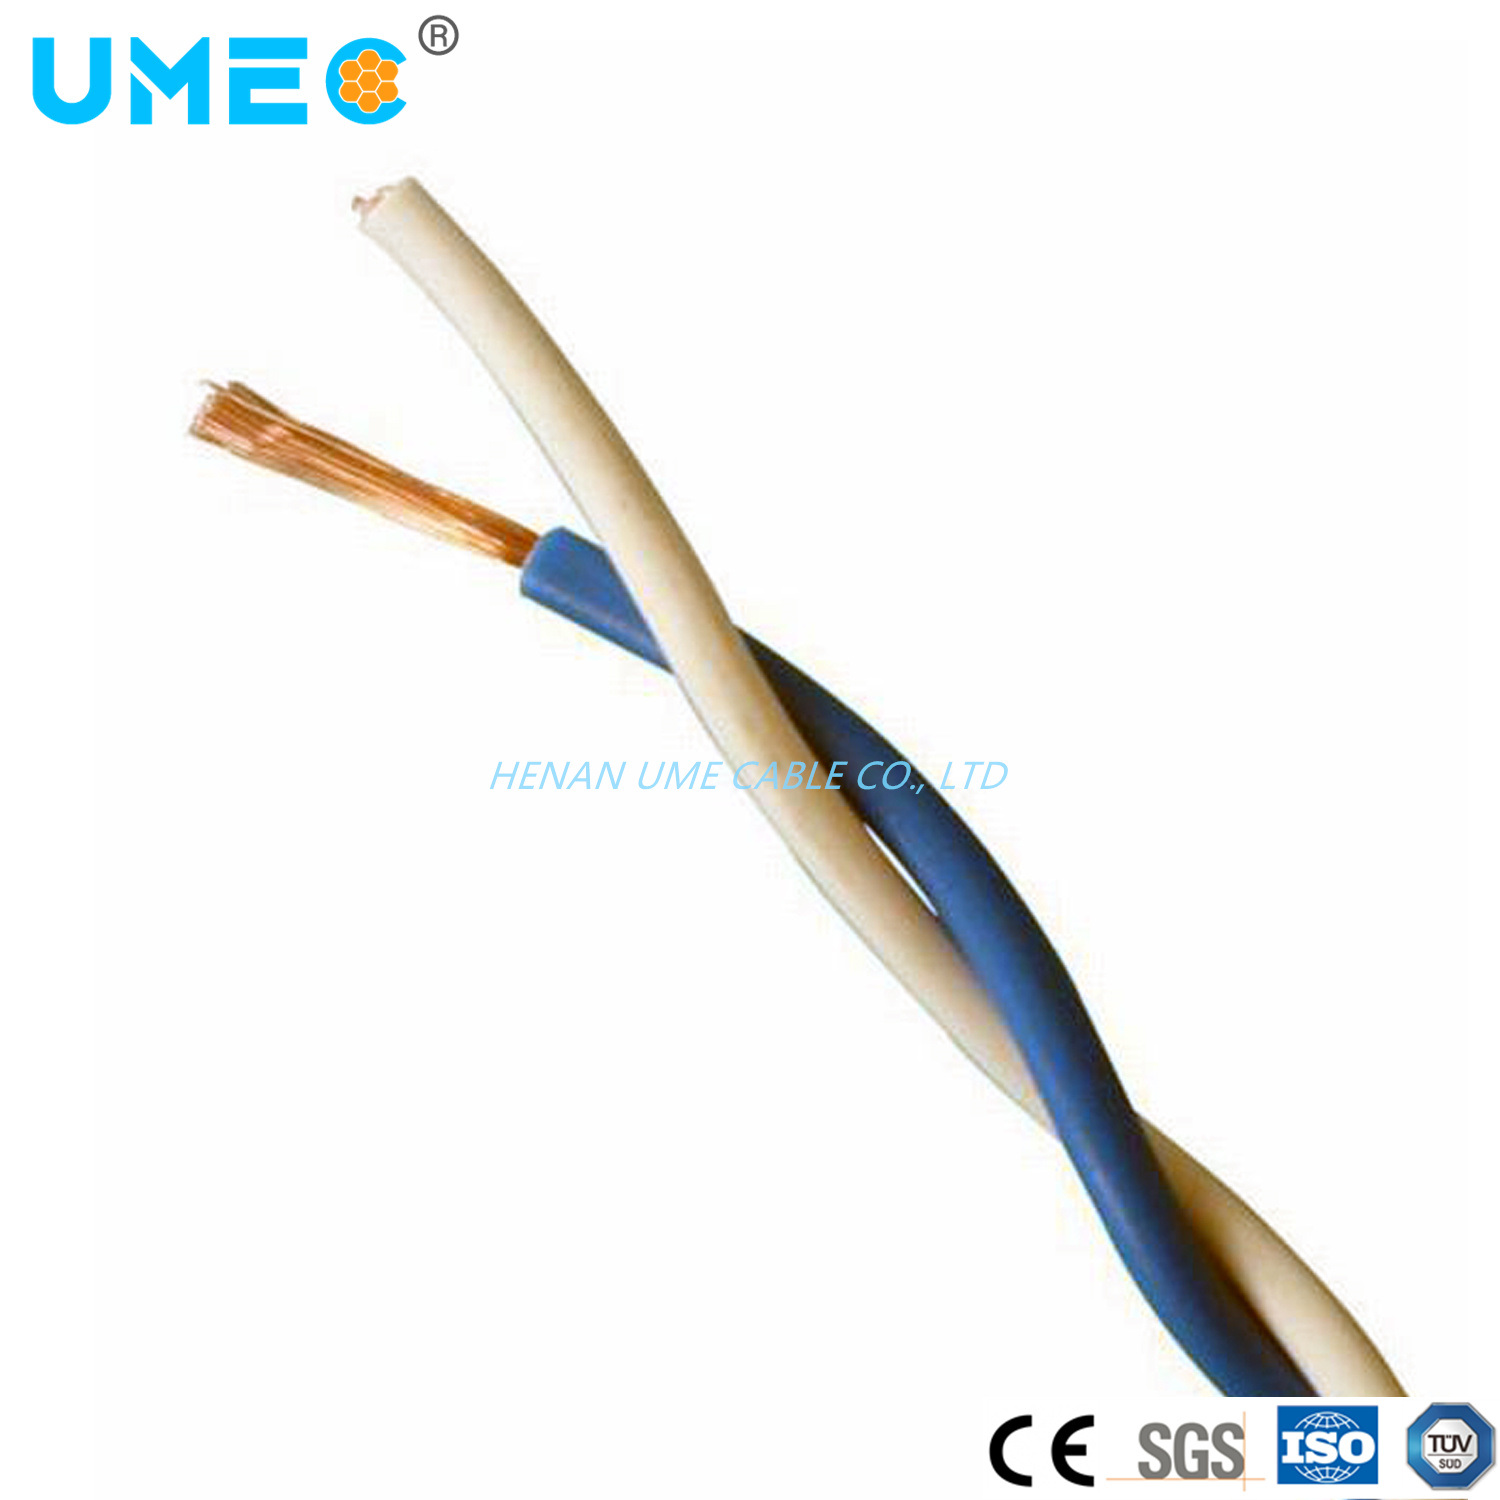 
                Conduttore in rame filo conduttore elettrico wire1,5 mm2
            